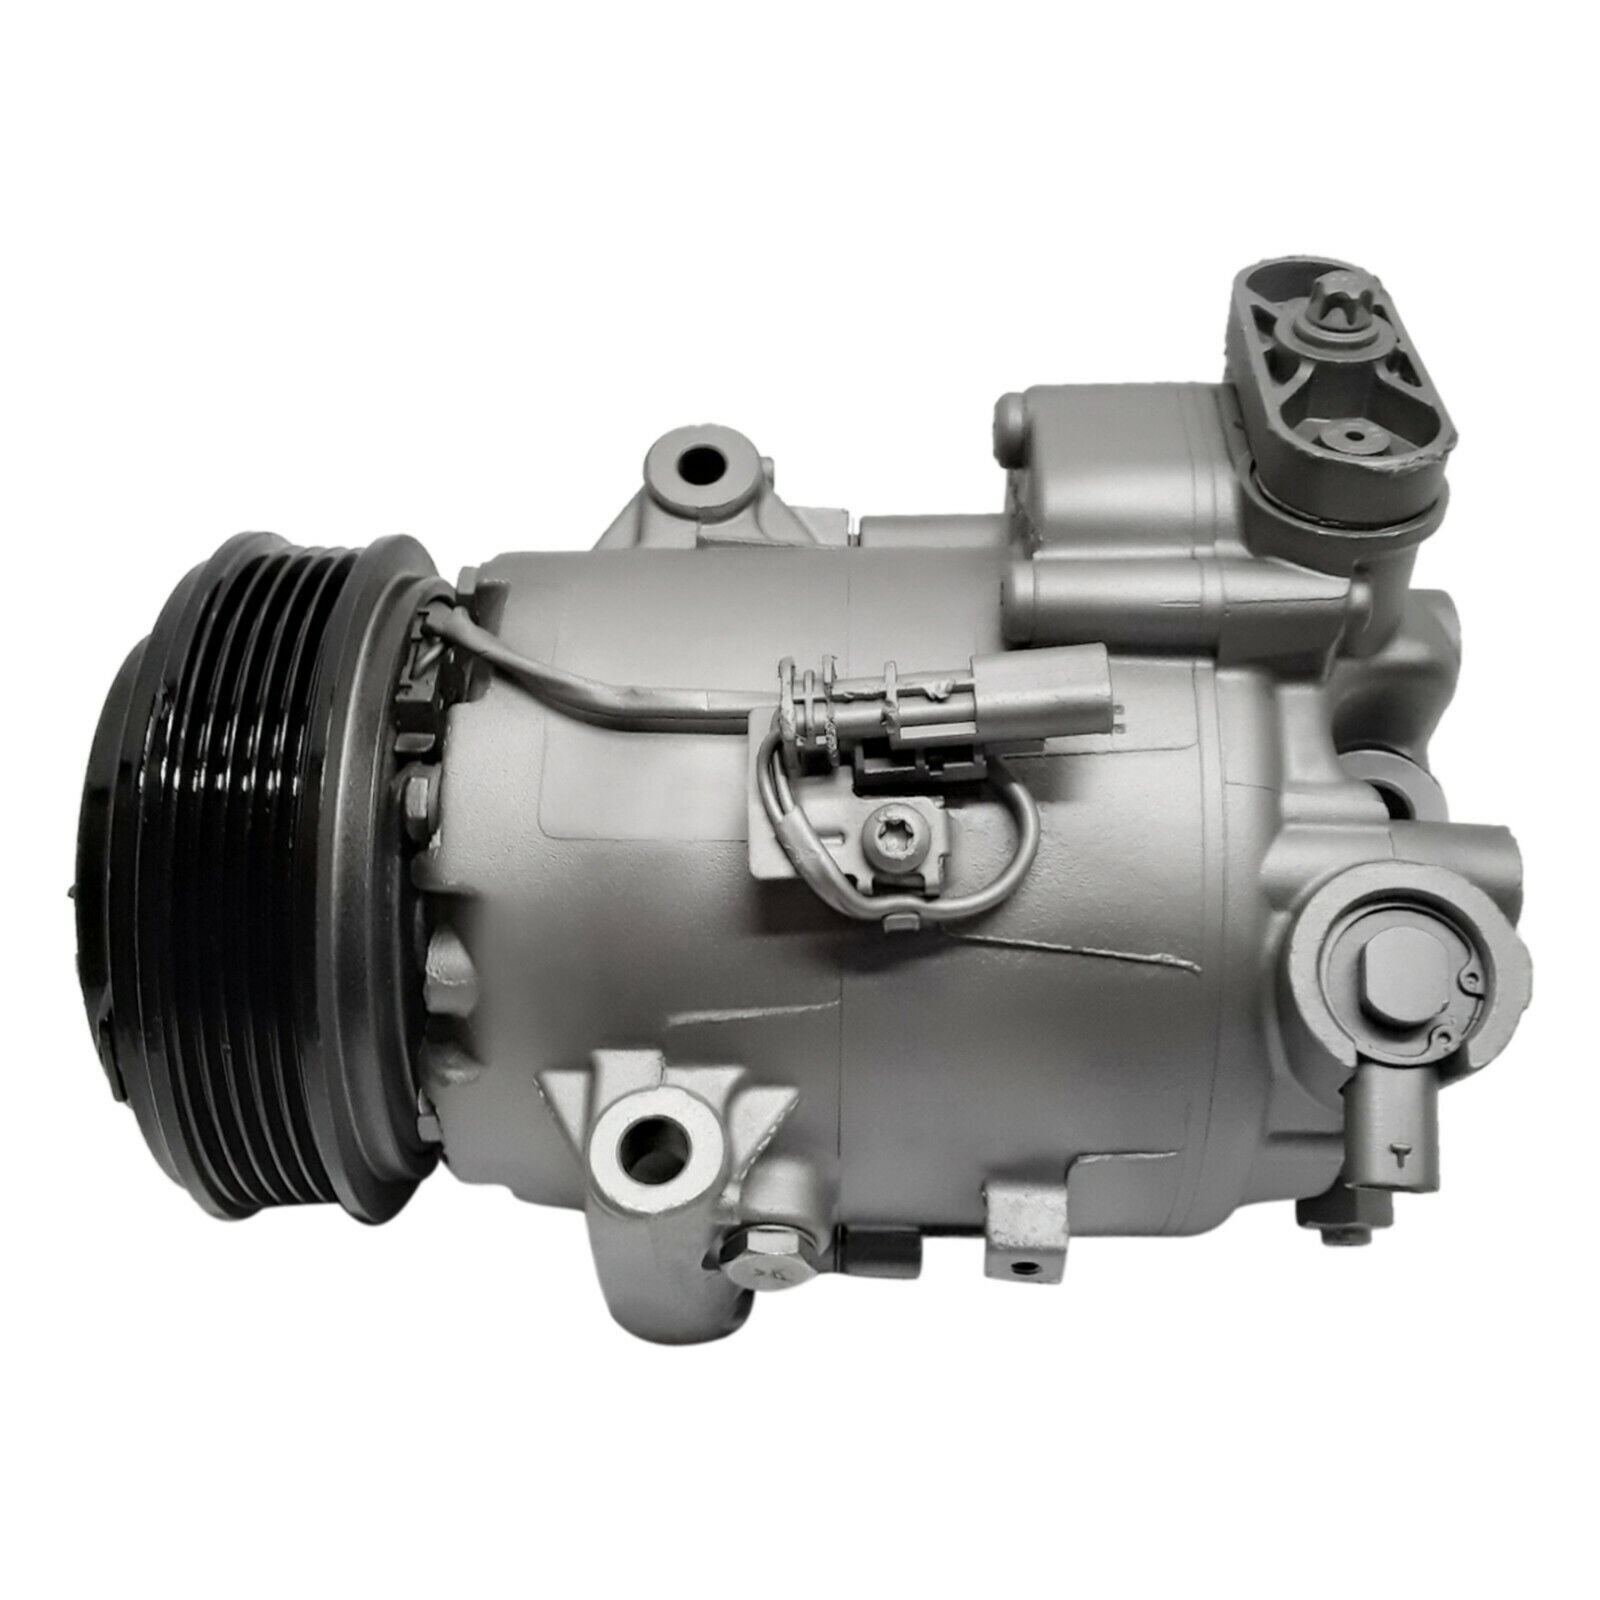 AC Compressor  Fits Chevrolet Cruze 1.4L 2012 2013 2014 2015 US stock